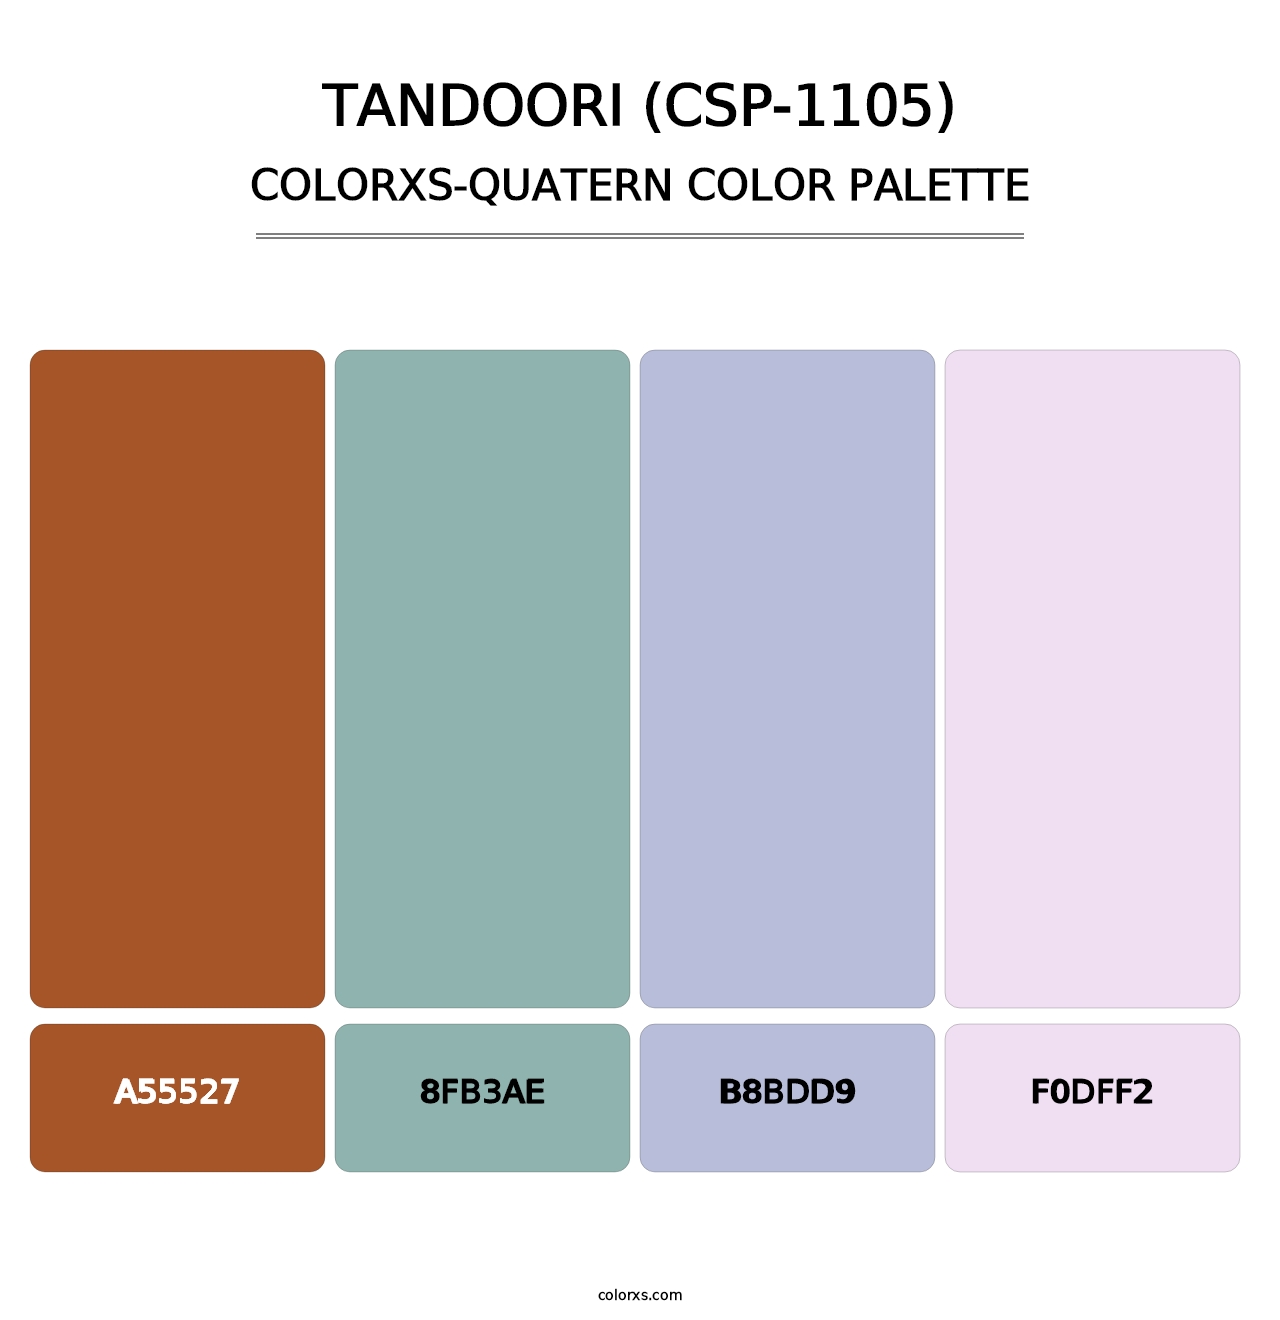 Tandoori (CSP-1105) - Colorxs Quatern Palette